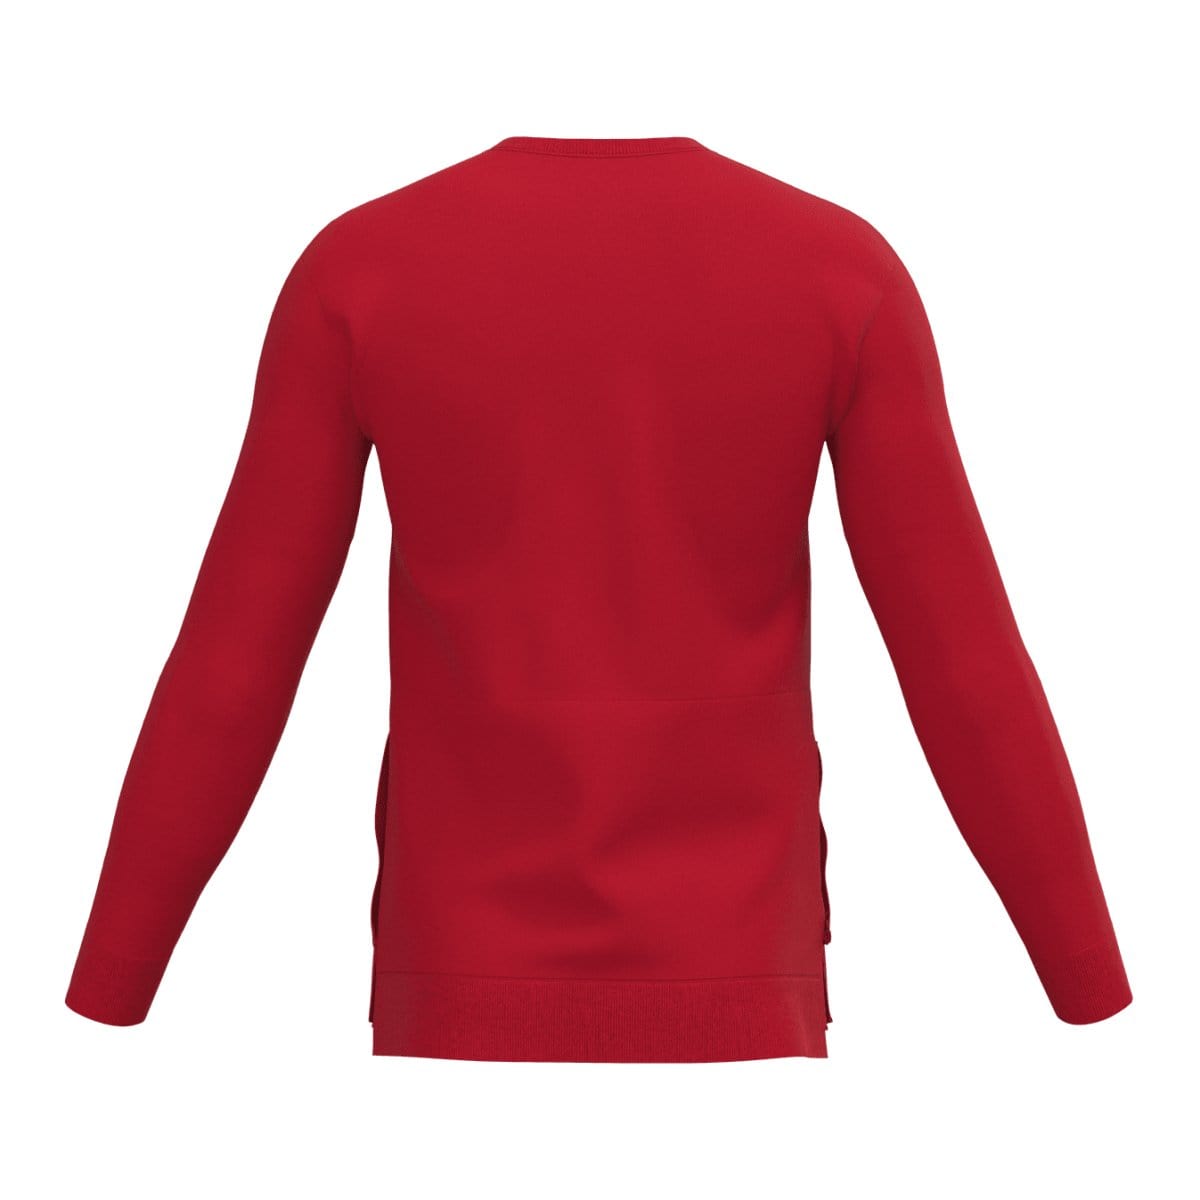 J.Hinton Collections sweatshirt Men's Bart Inspired Marksmenari- Fleece Sweatsuit